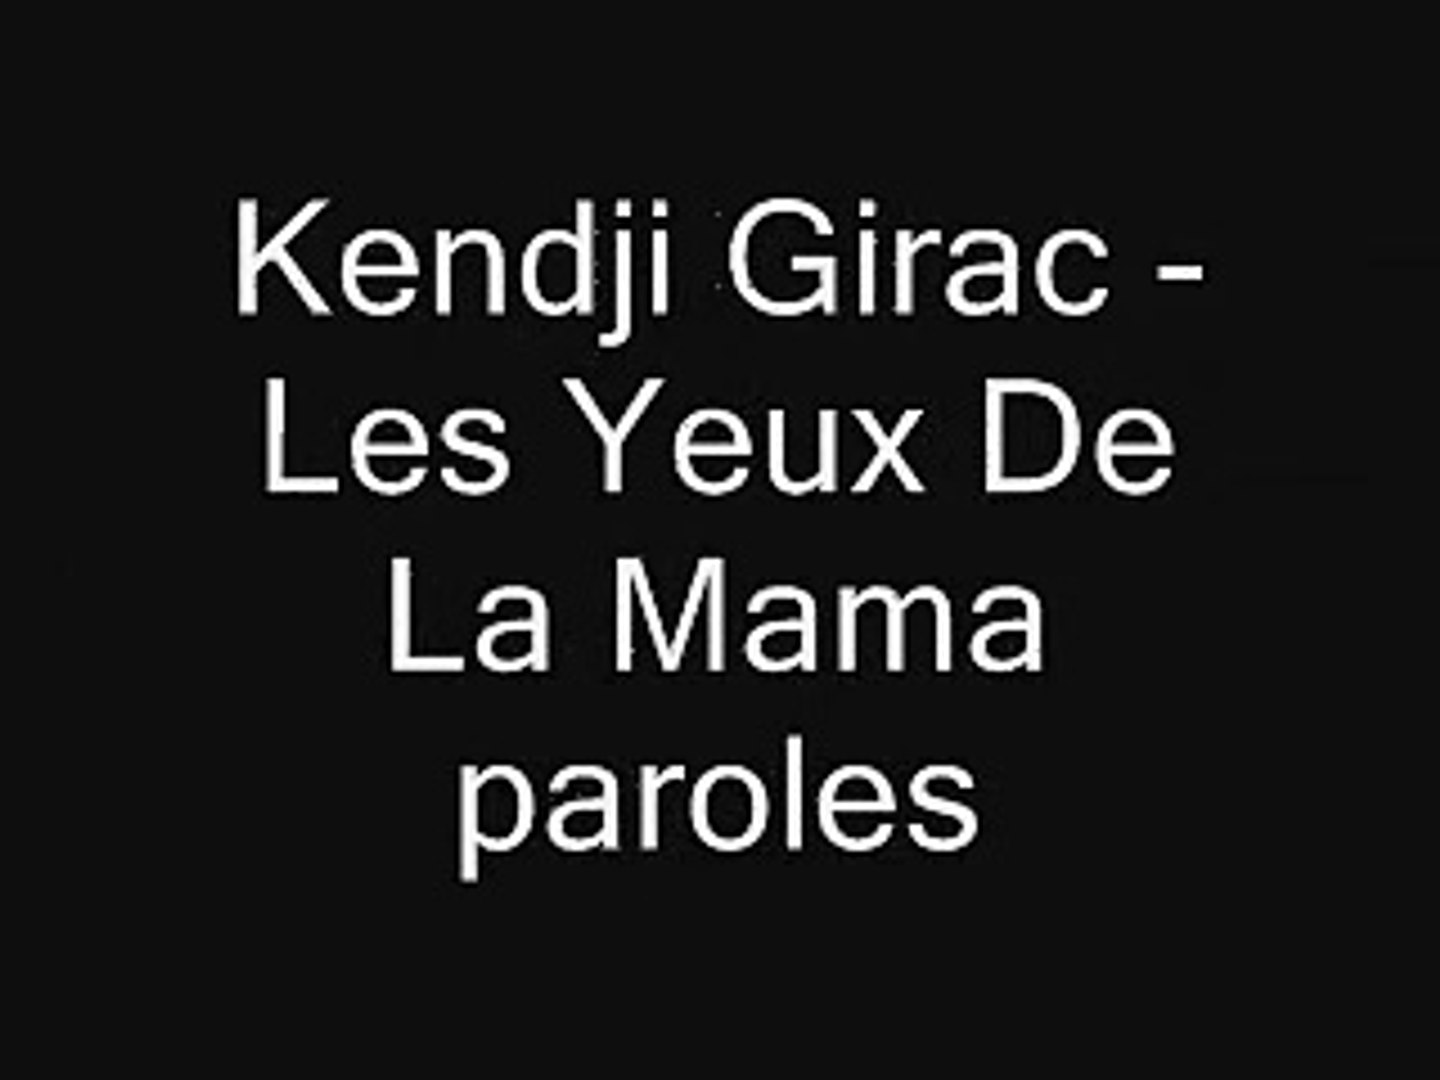 Les yeux de la Mama - Kendji Girac Paroles - Dailymotion Video